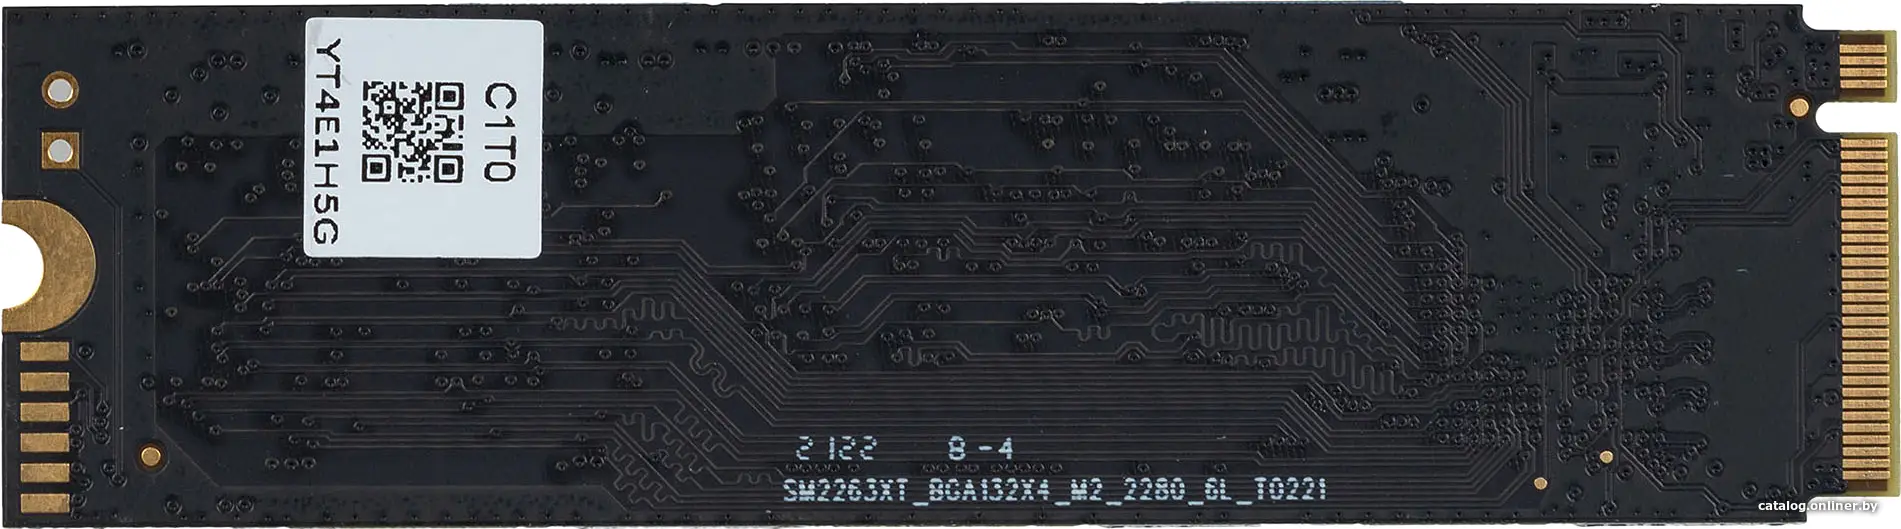 SSD диск Digma PCI-E 4.0 x4 1Tb Top P8 M.2 2280 (DGST4001TP83T)